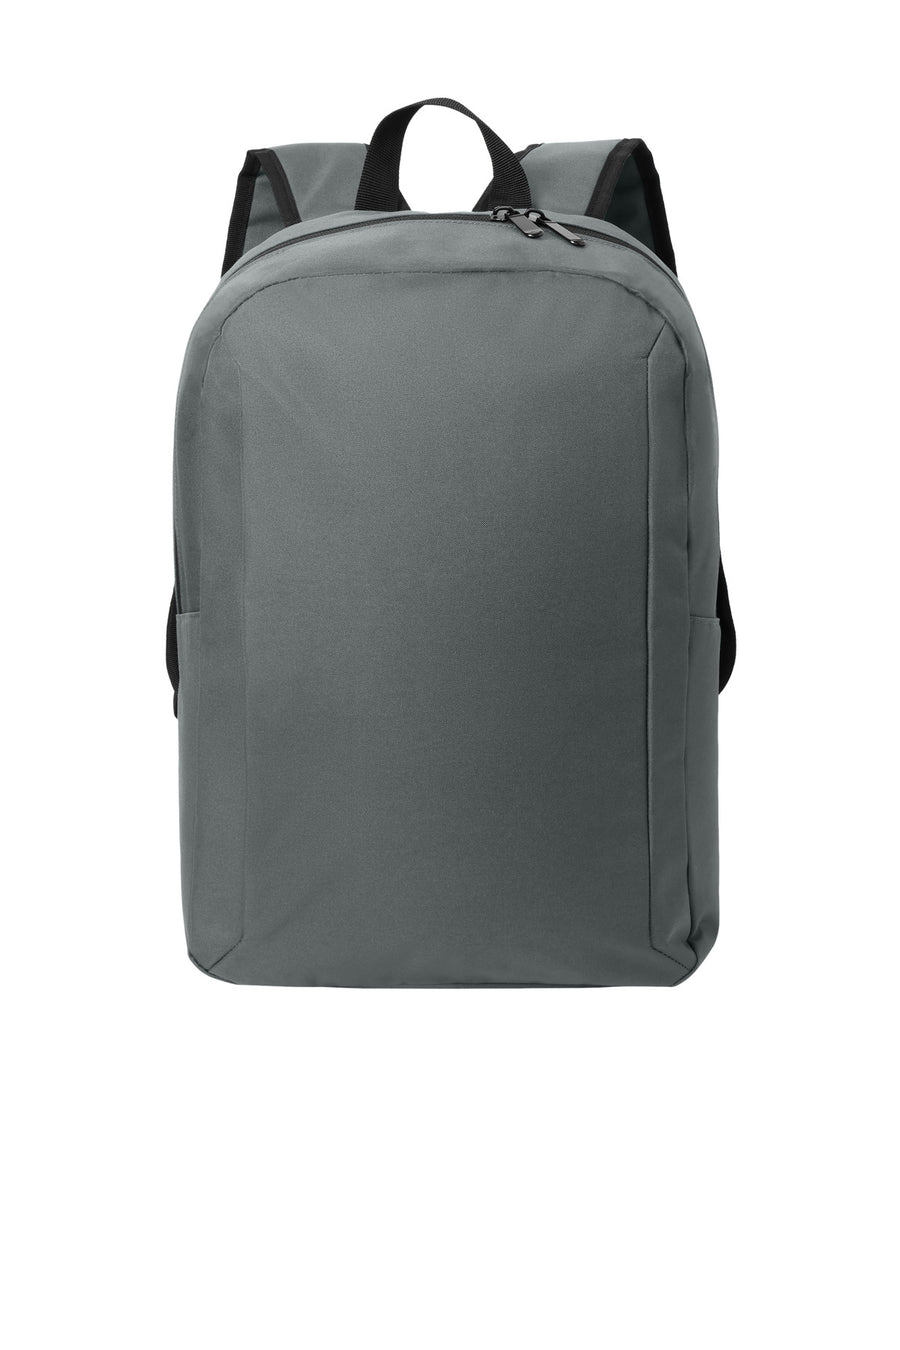 Port Authority¬Æ Modern Backpack BG231